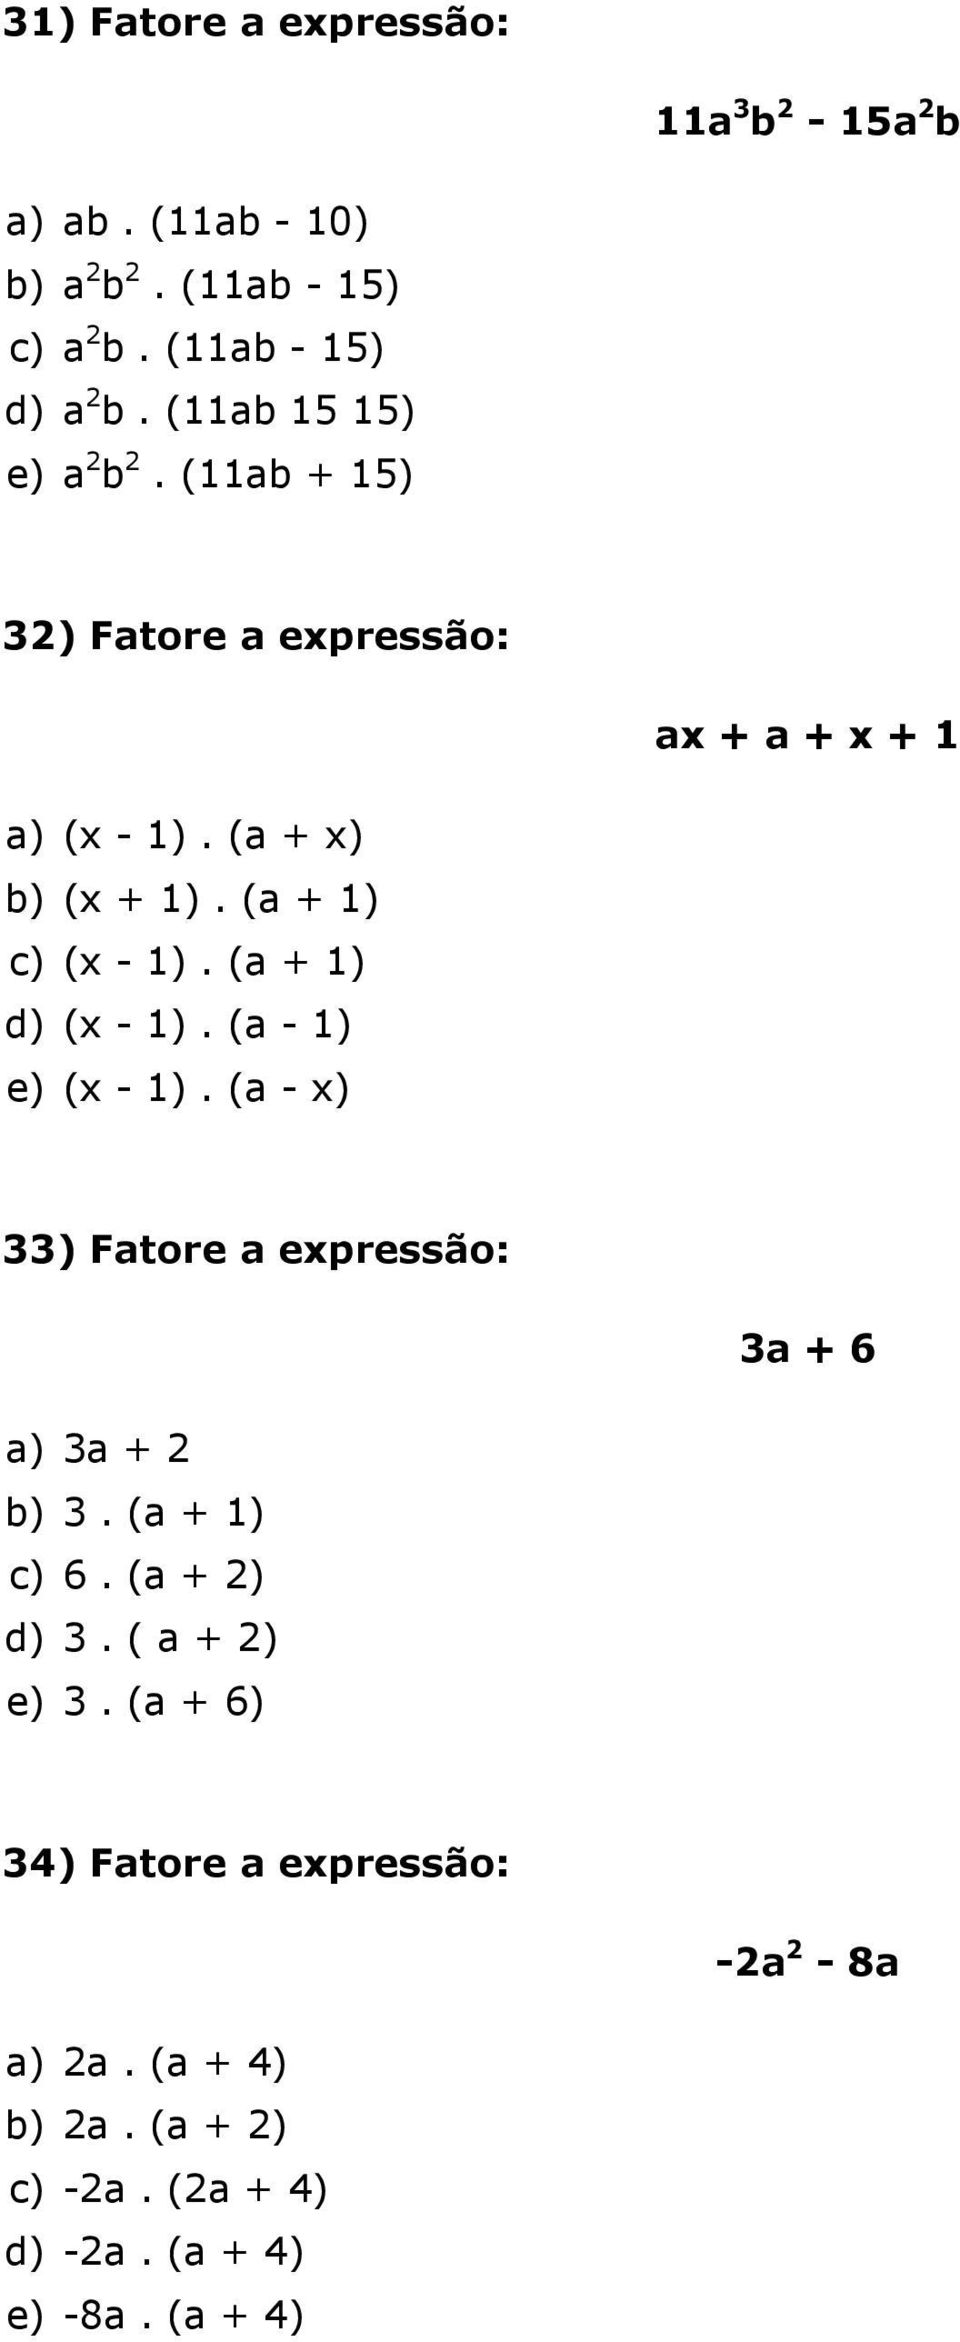 (a + 1) c) (x - 1). (a + 1) d) (x - 1). (a - 1) e) (x - 1). (a - x) 33) Fatore a expressão: 3a + 6 a) 3a + 2 b) 3.